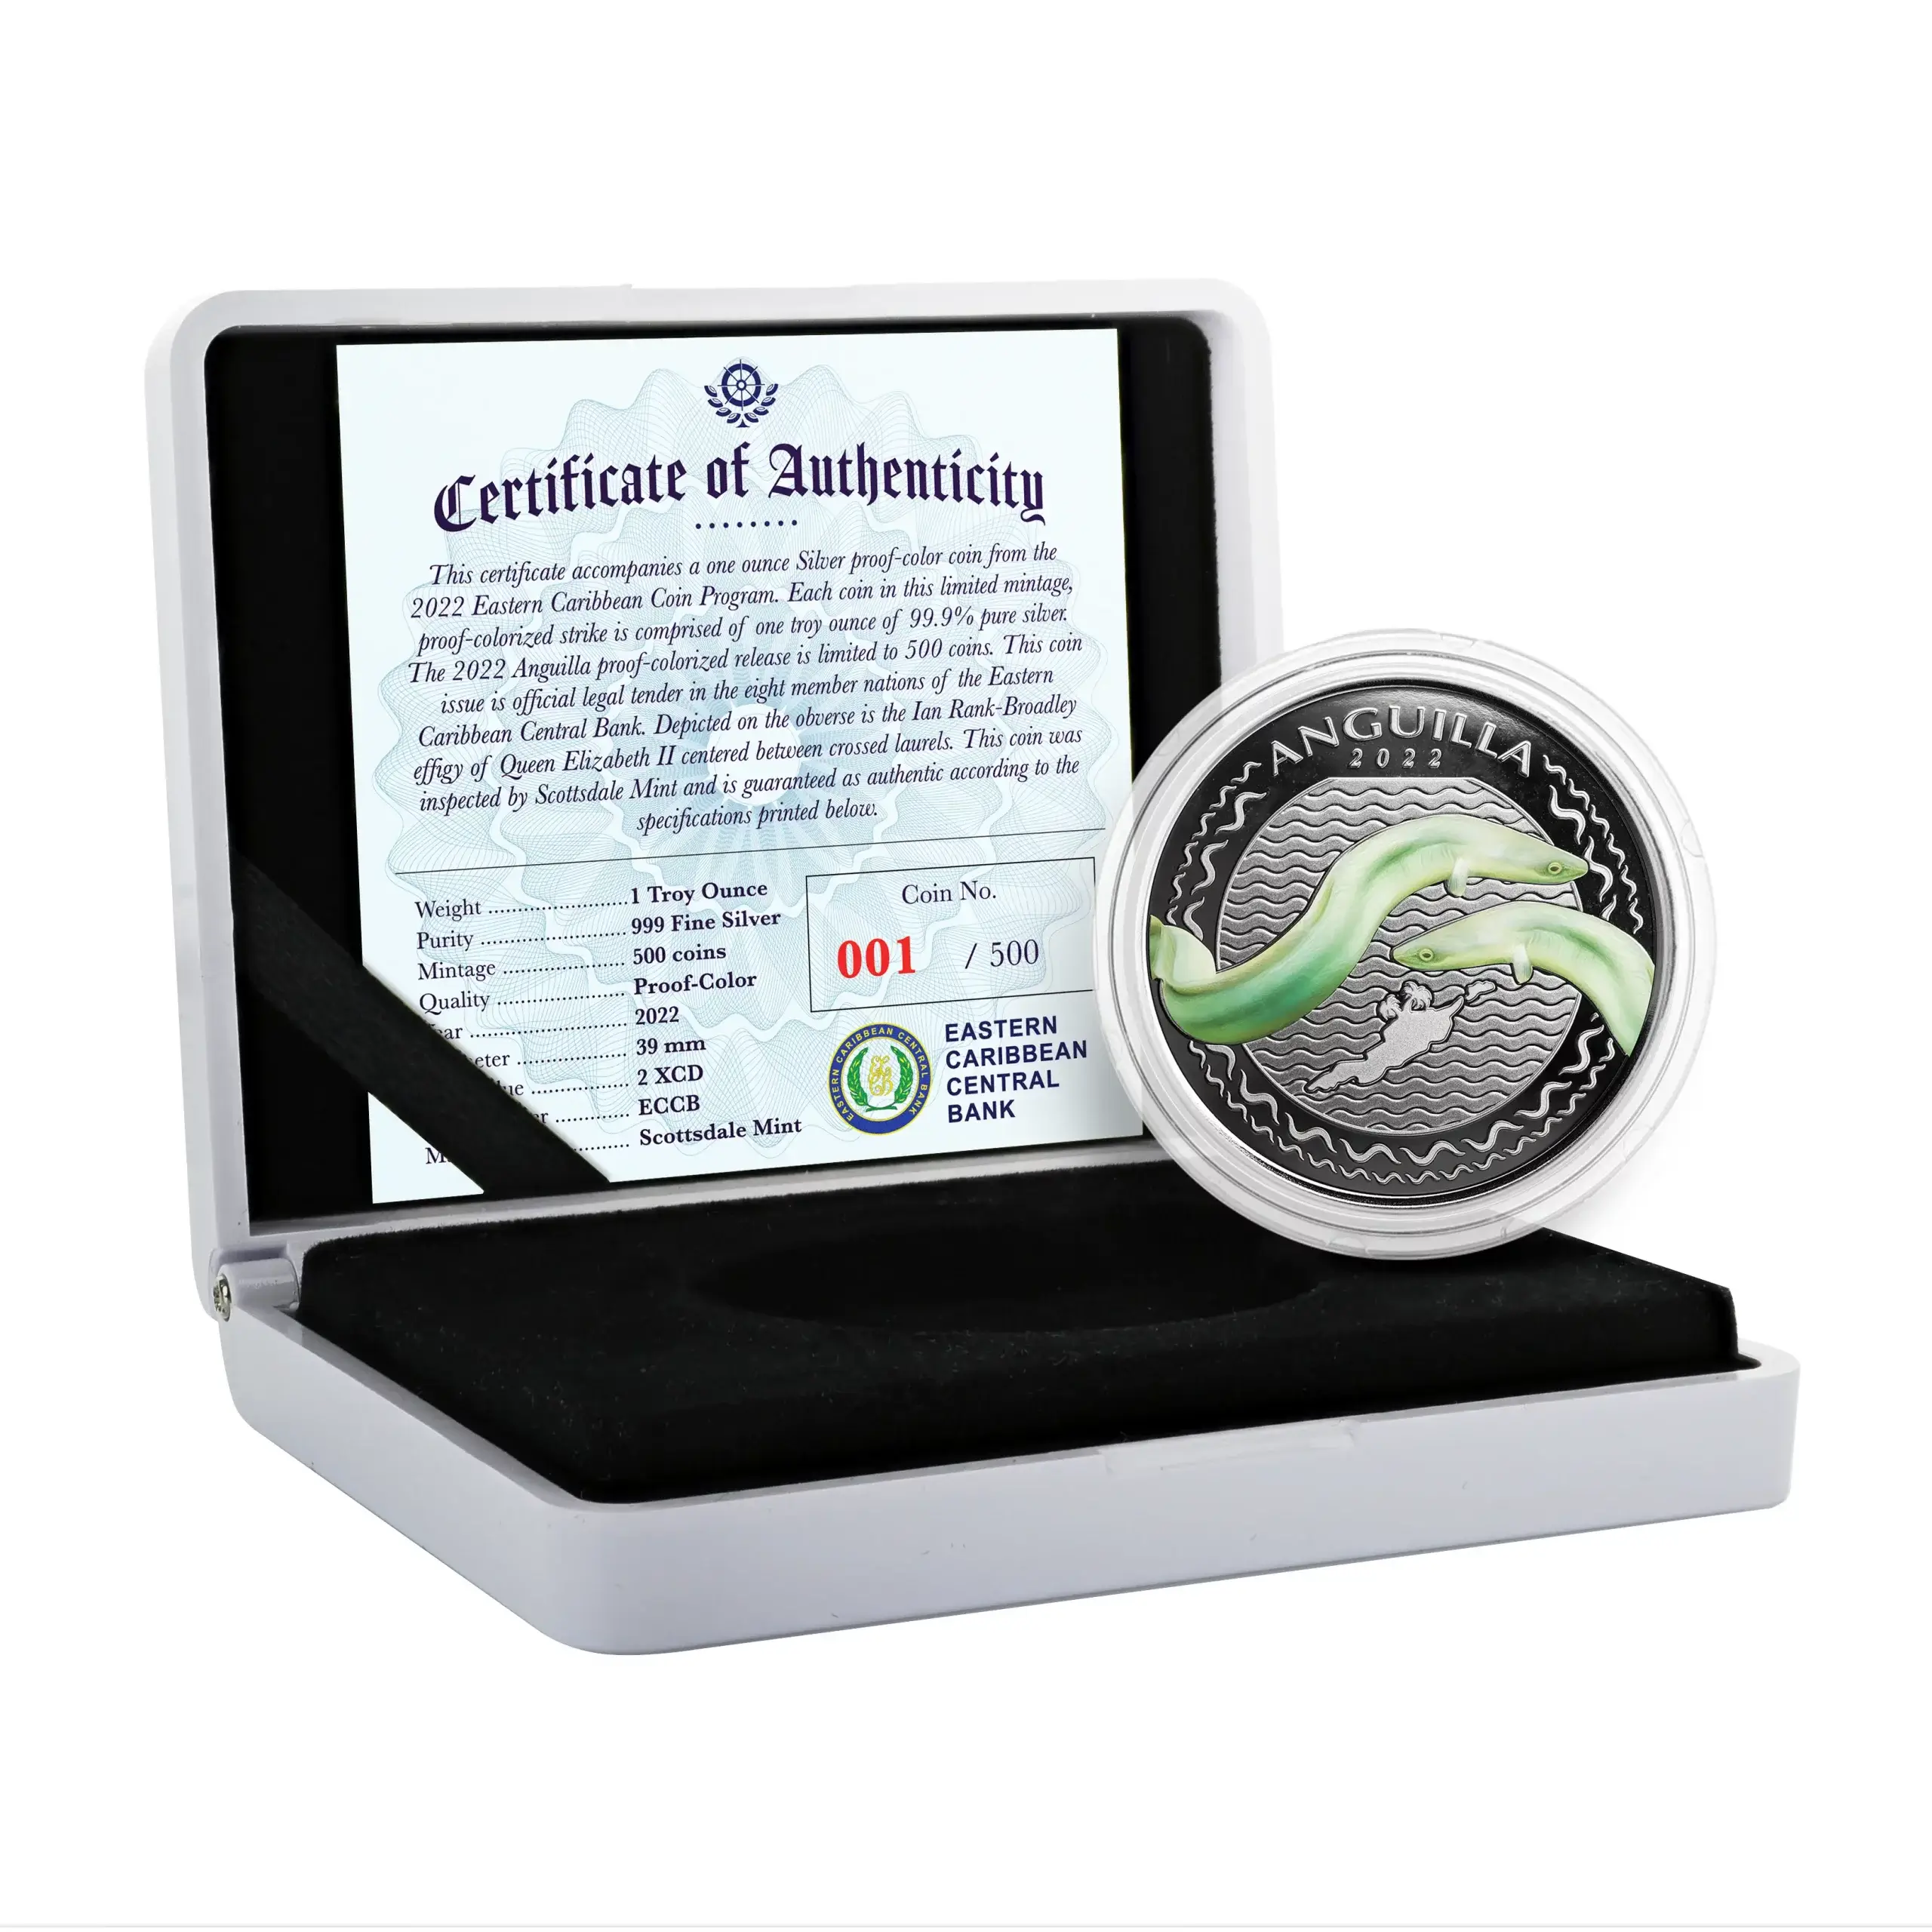 2021 Ec8 Anguilla 1 Oz Silver Coin Case Coin